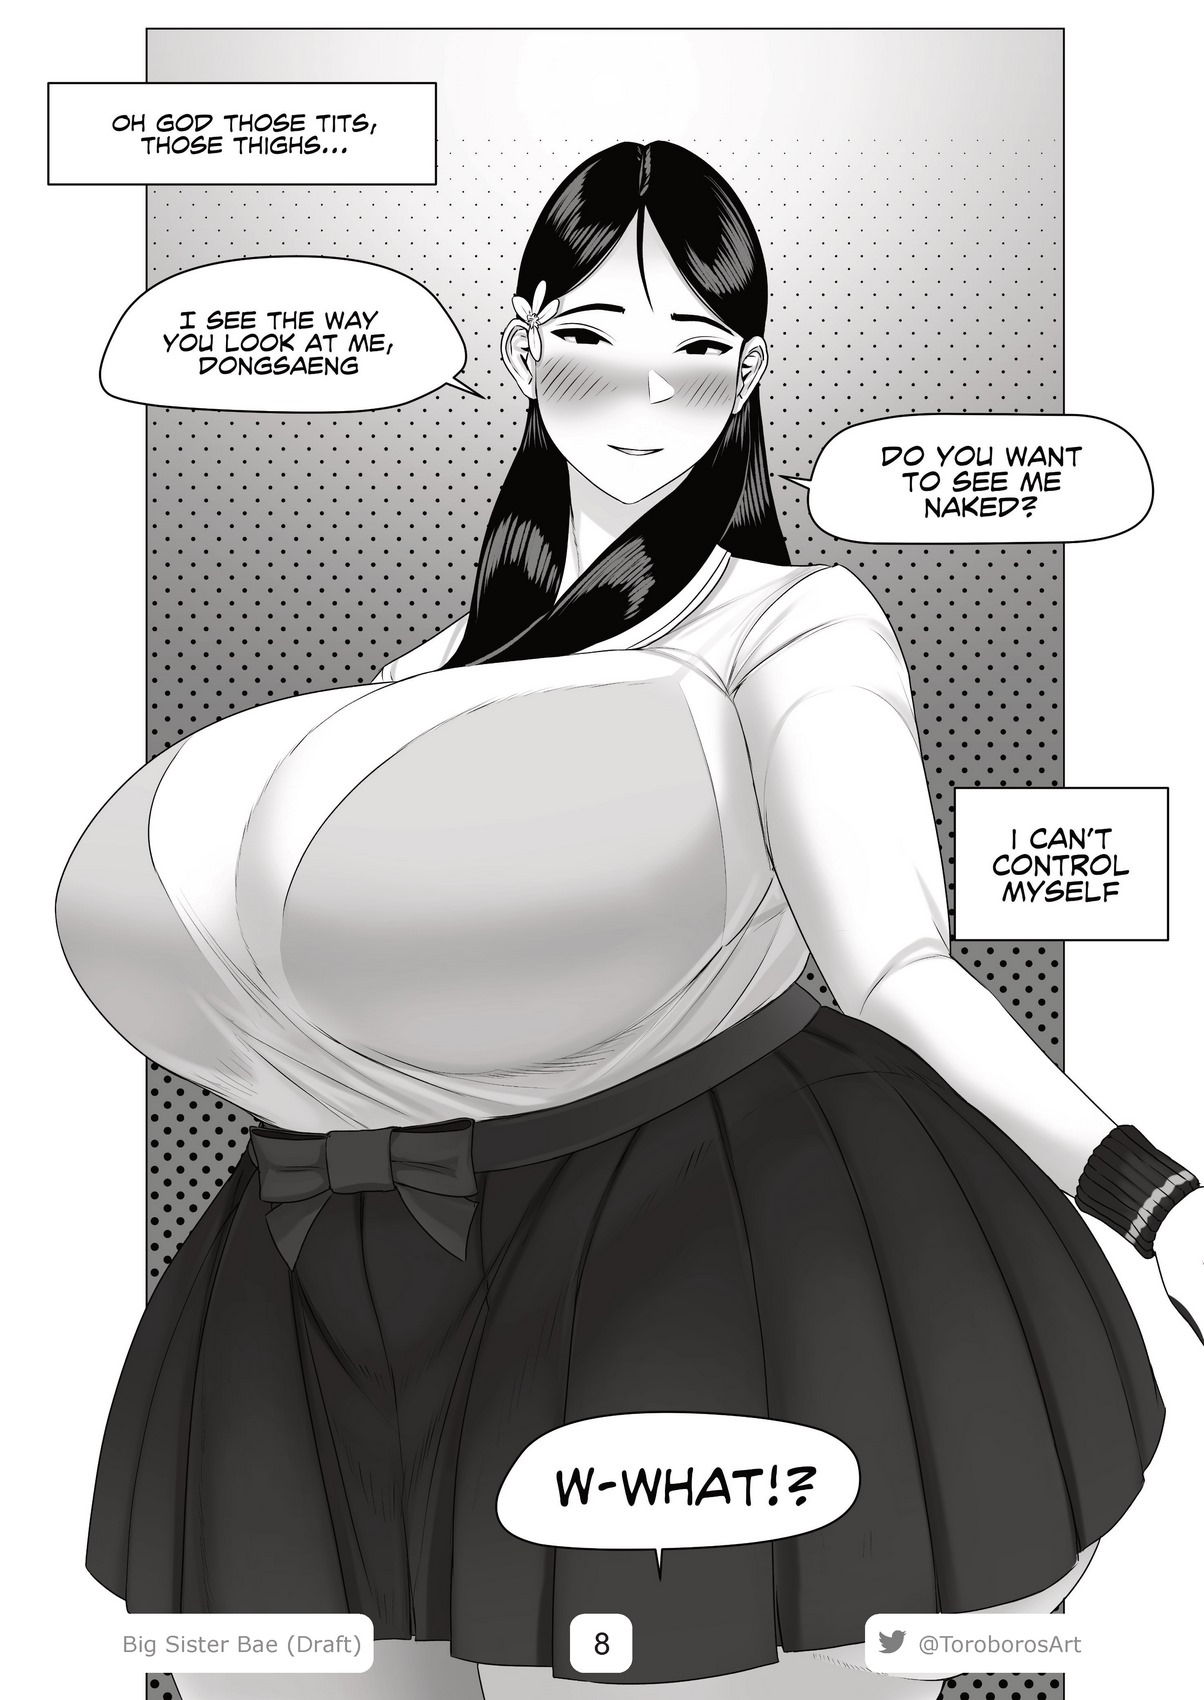 Big Sister Bae â€“ Toroboro - Porn Cartoon Comics